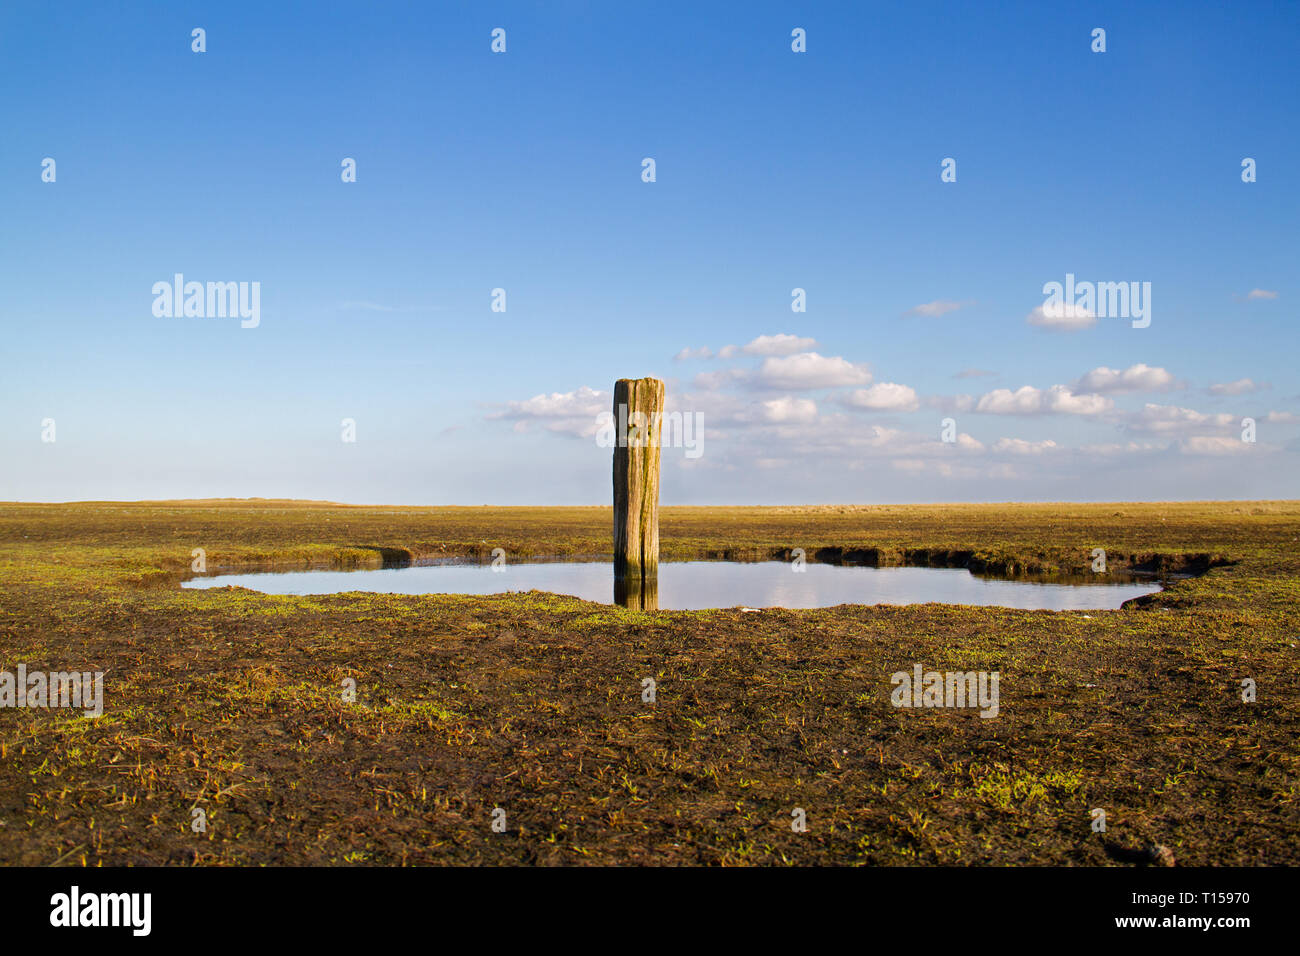 Plage vieilli pole dans un marais salé, un paysage d'estuaire Banque D'Images